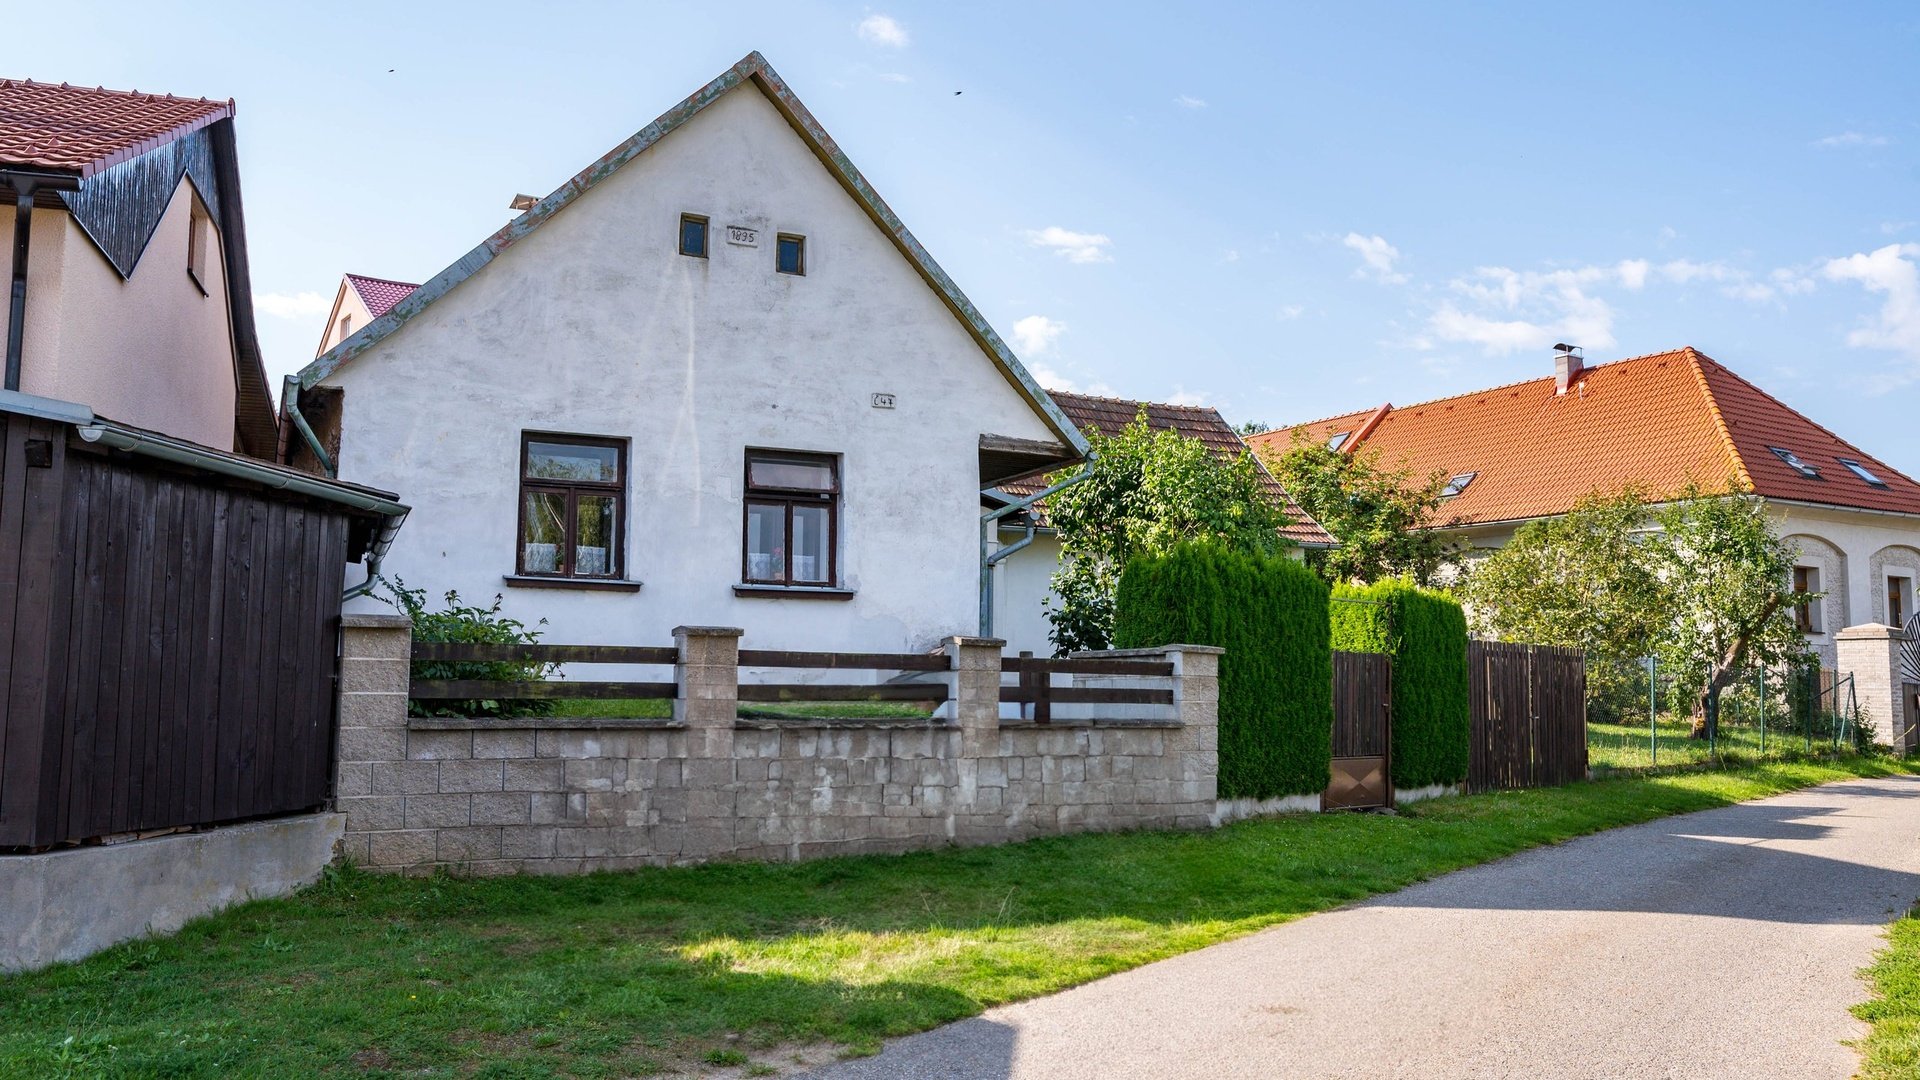 Prodej krásného domu v obci Pošná na Vysočině, 120 m2 podlahové plochy